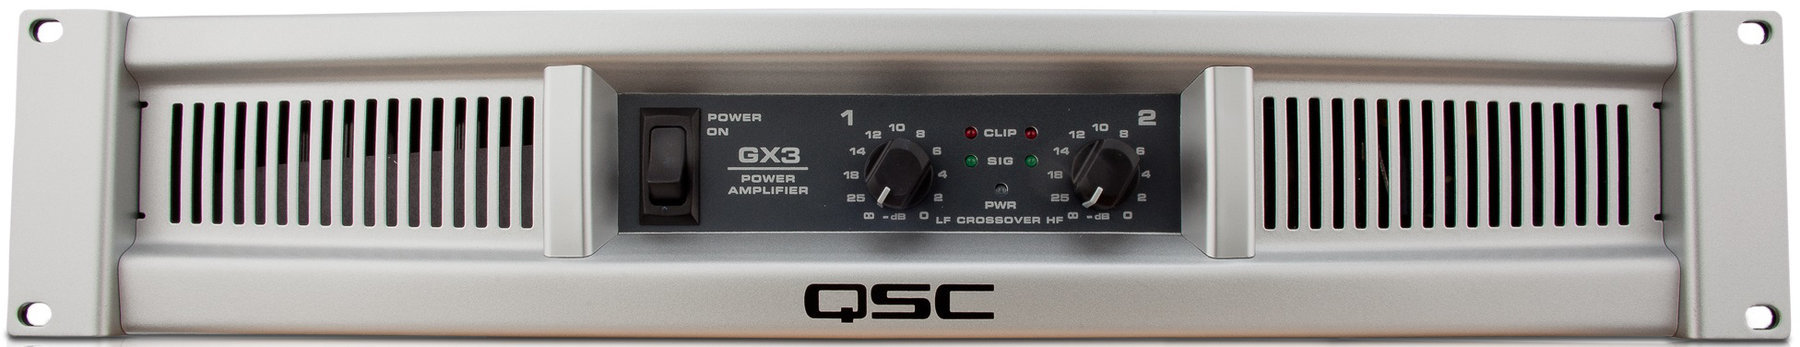 Końcówka mocy QSC GX3 Końcówka mocy